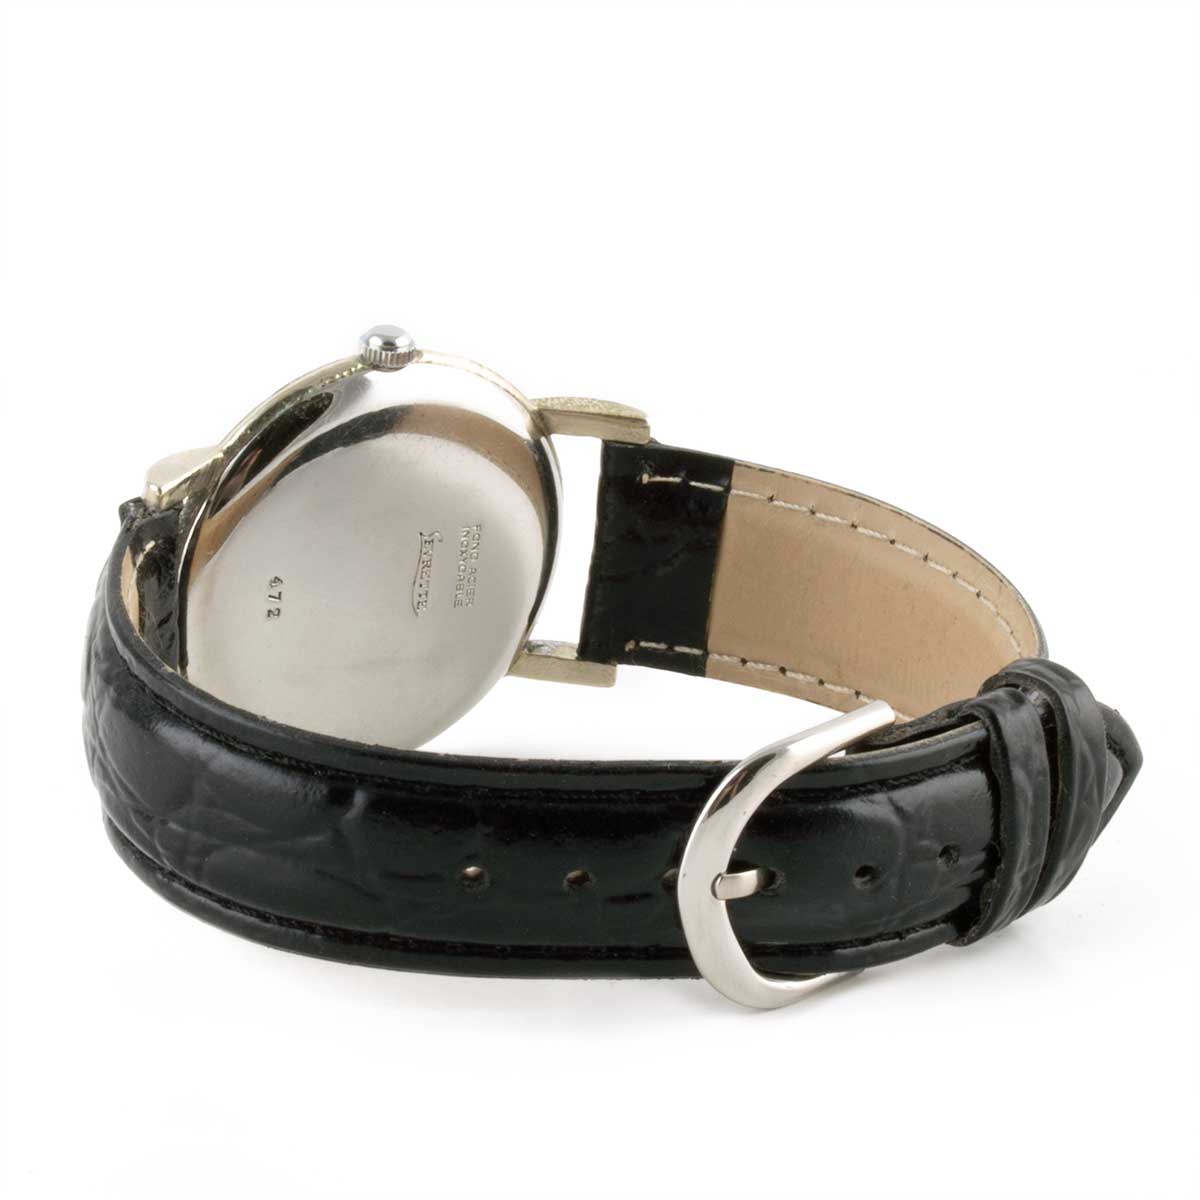 Second-hand watch - Levrette vintage - 900€